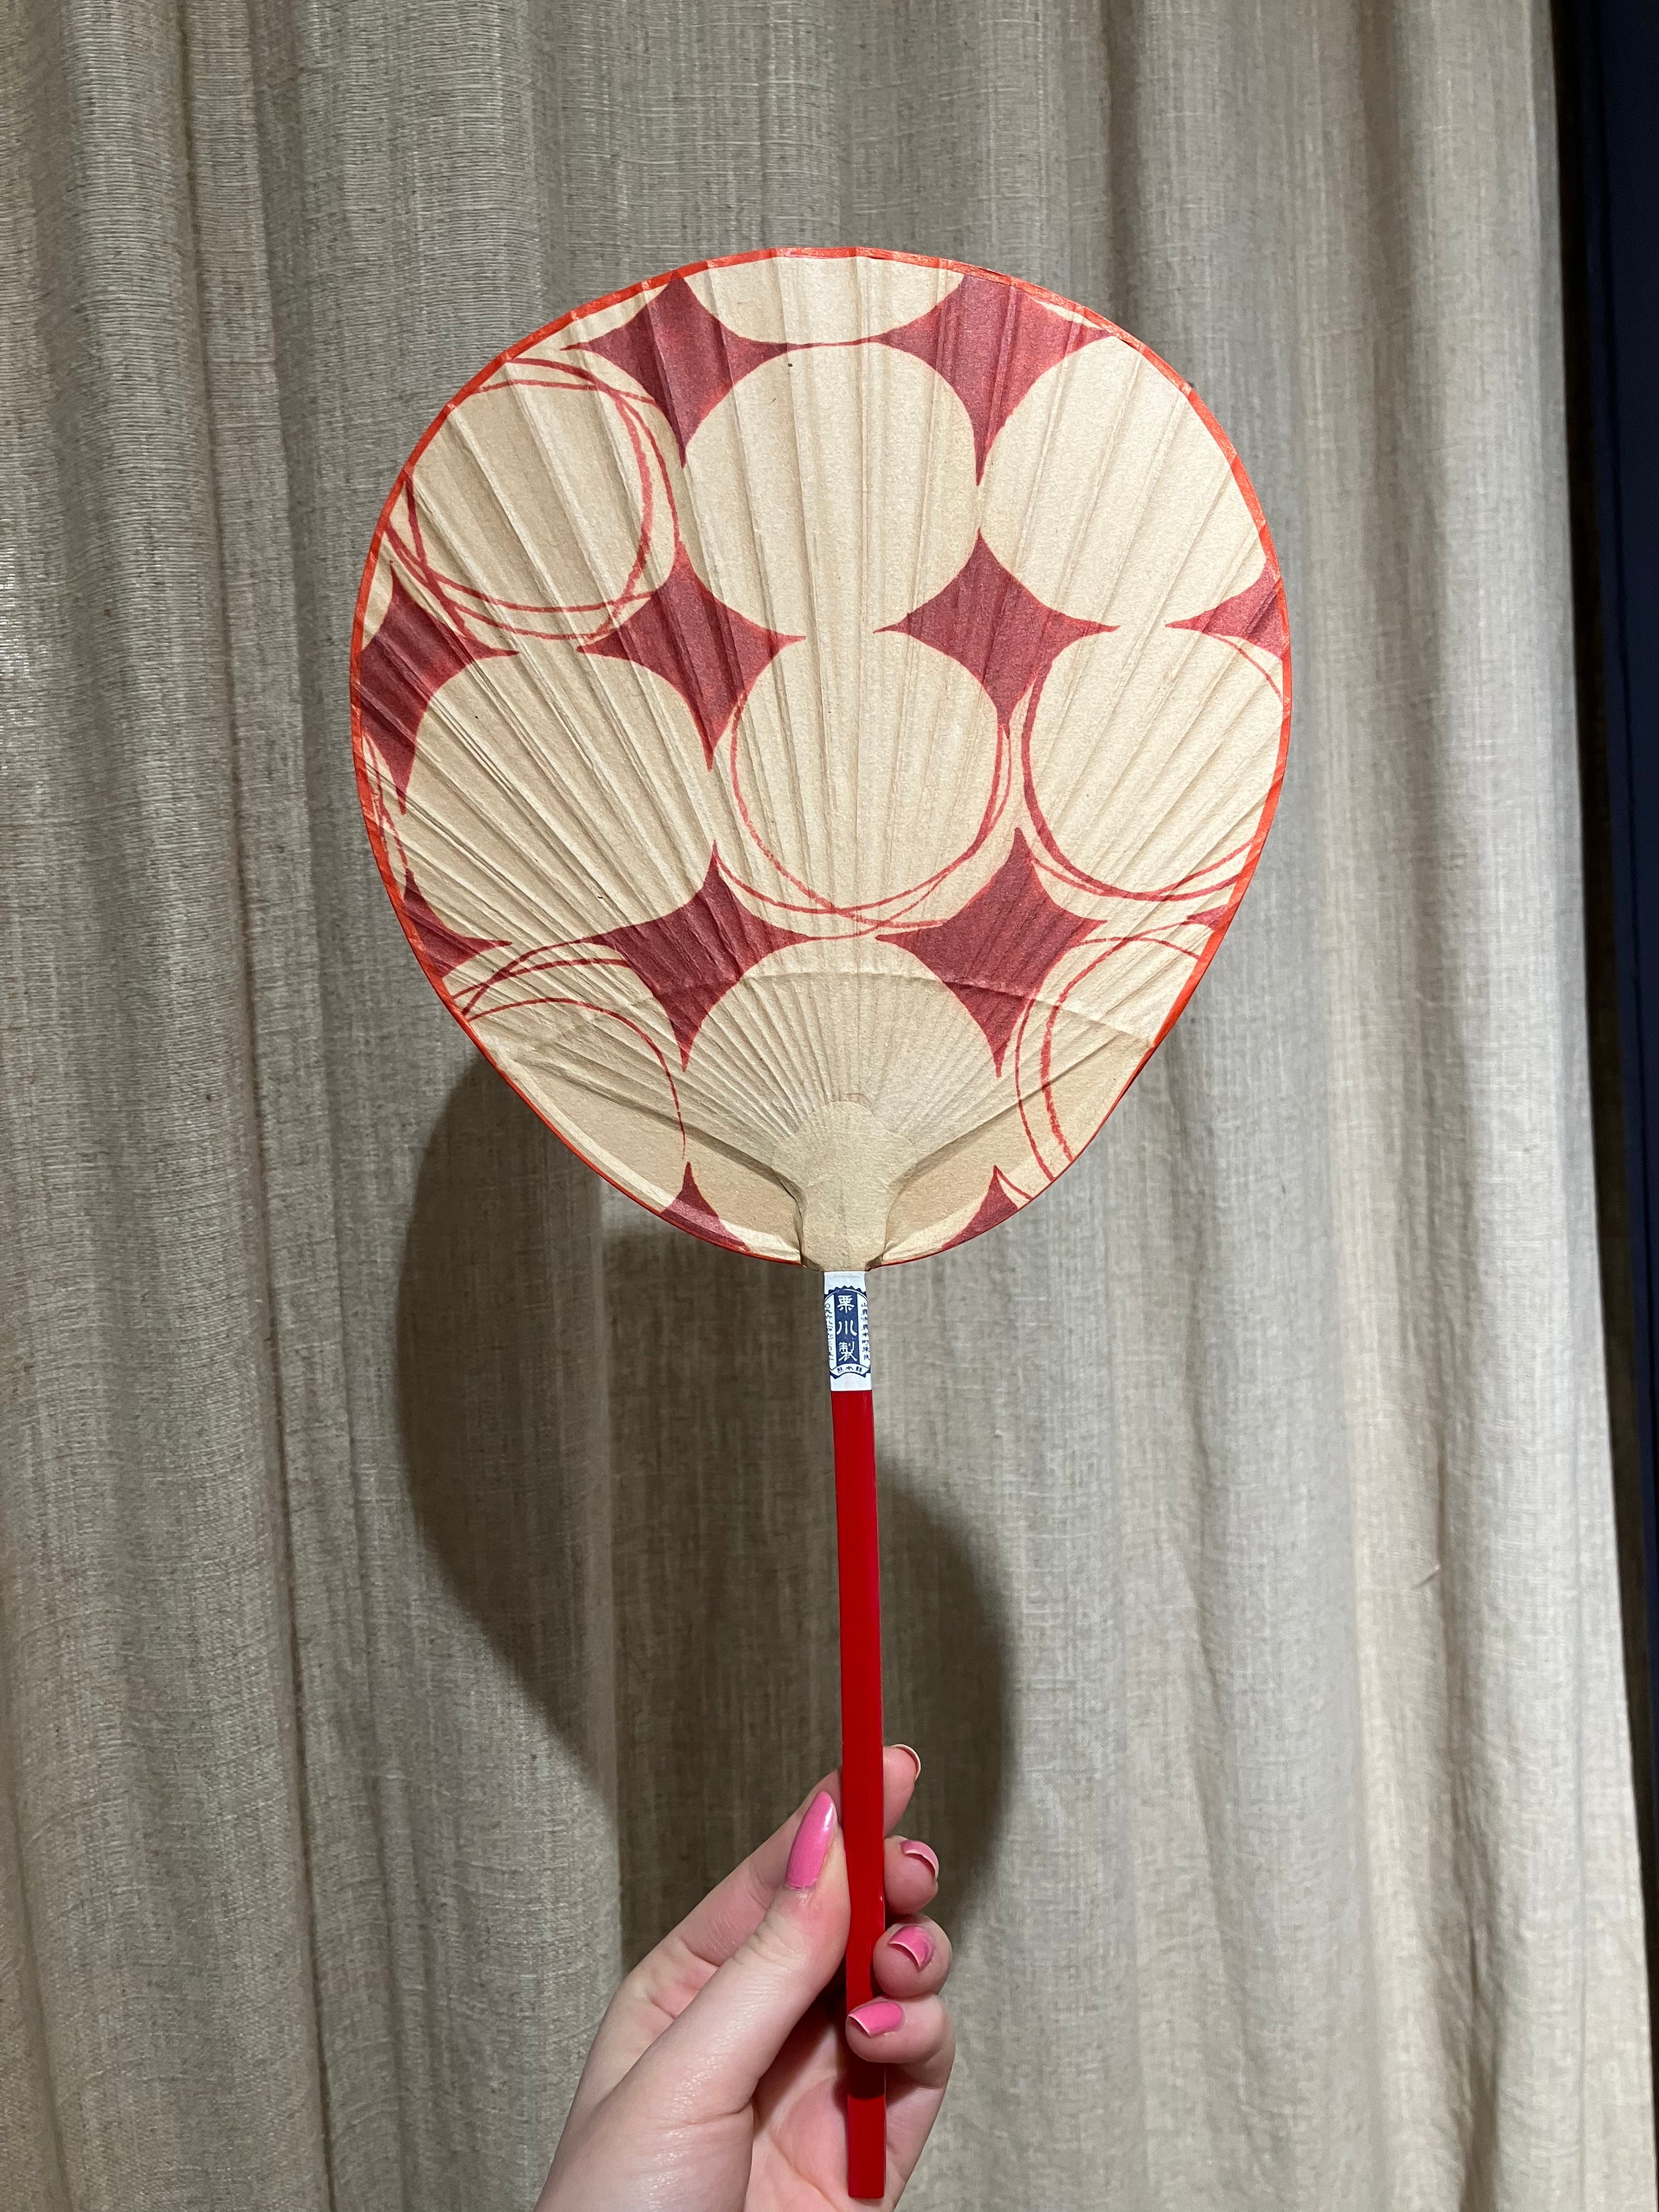 Handmade Japanese Shibu fans